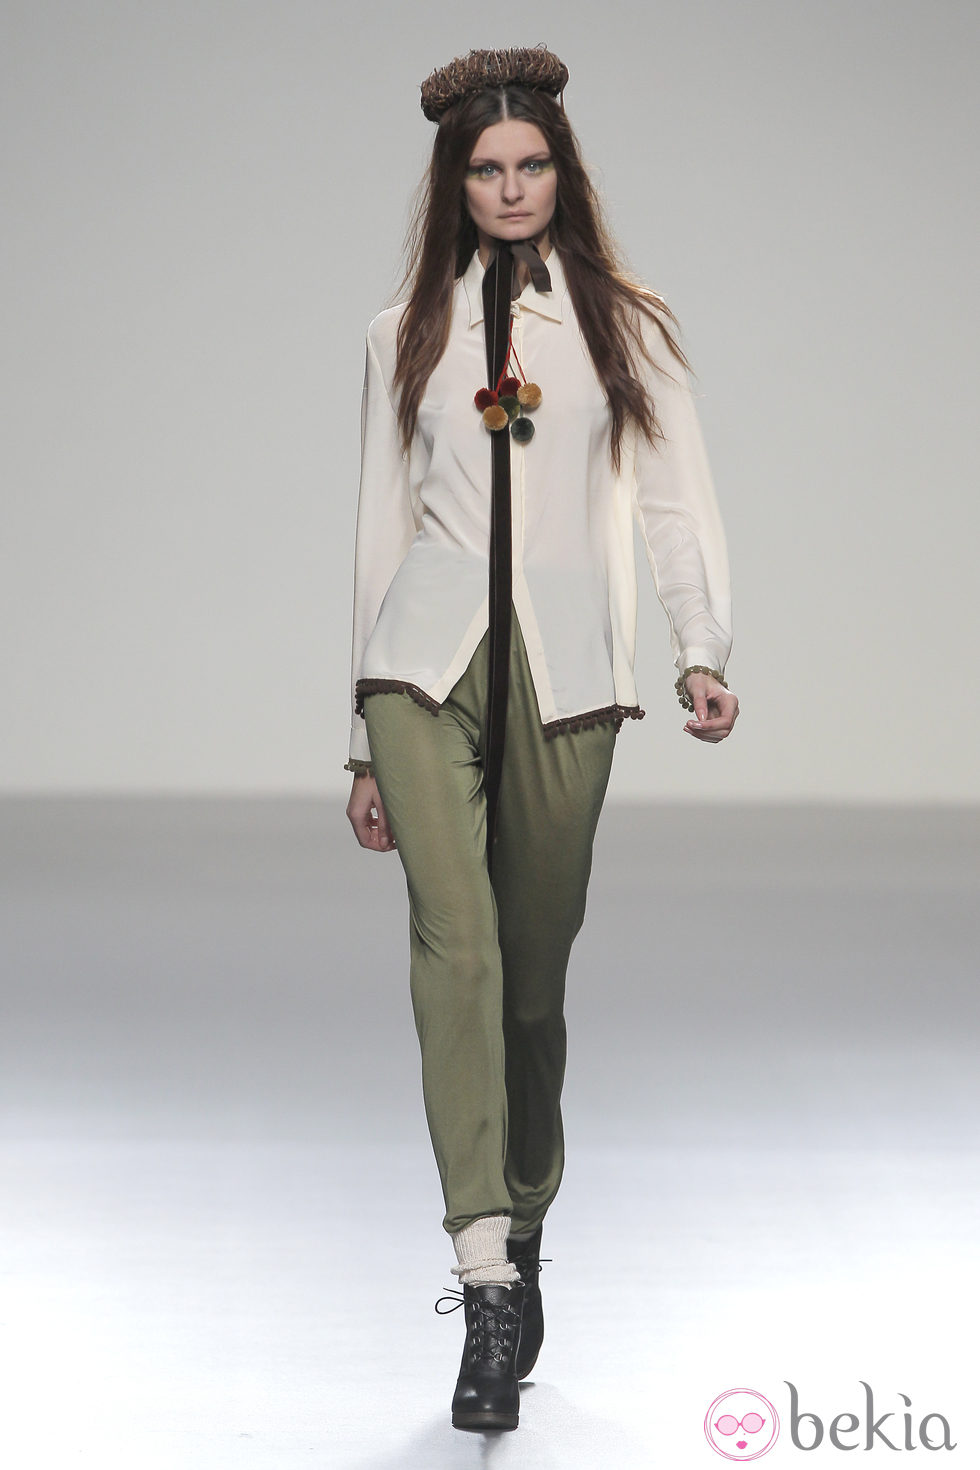 Pantalón tobillero verde de la colección otoño/invierno 2013/2014 de HOWL by Maria Glück en El Ego de Madrid Fashion Week